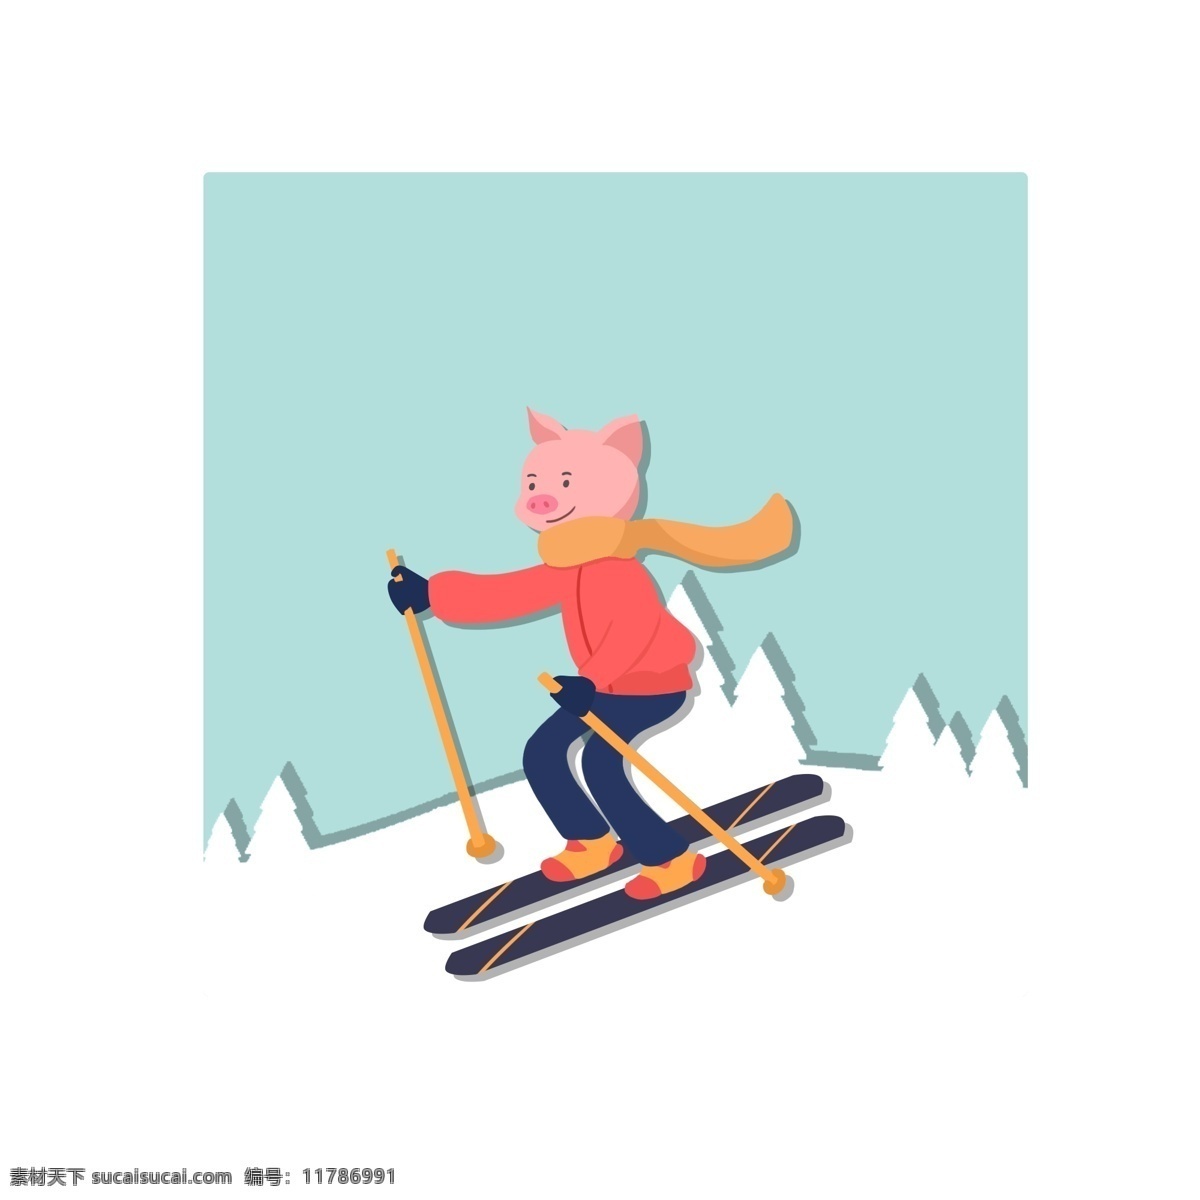 原创 冬季 元素 小 猪 滑雪 商用 小猪 雪景 卡通